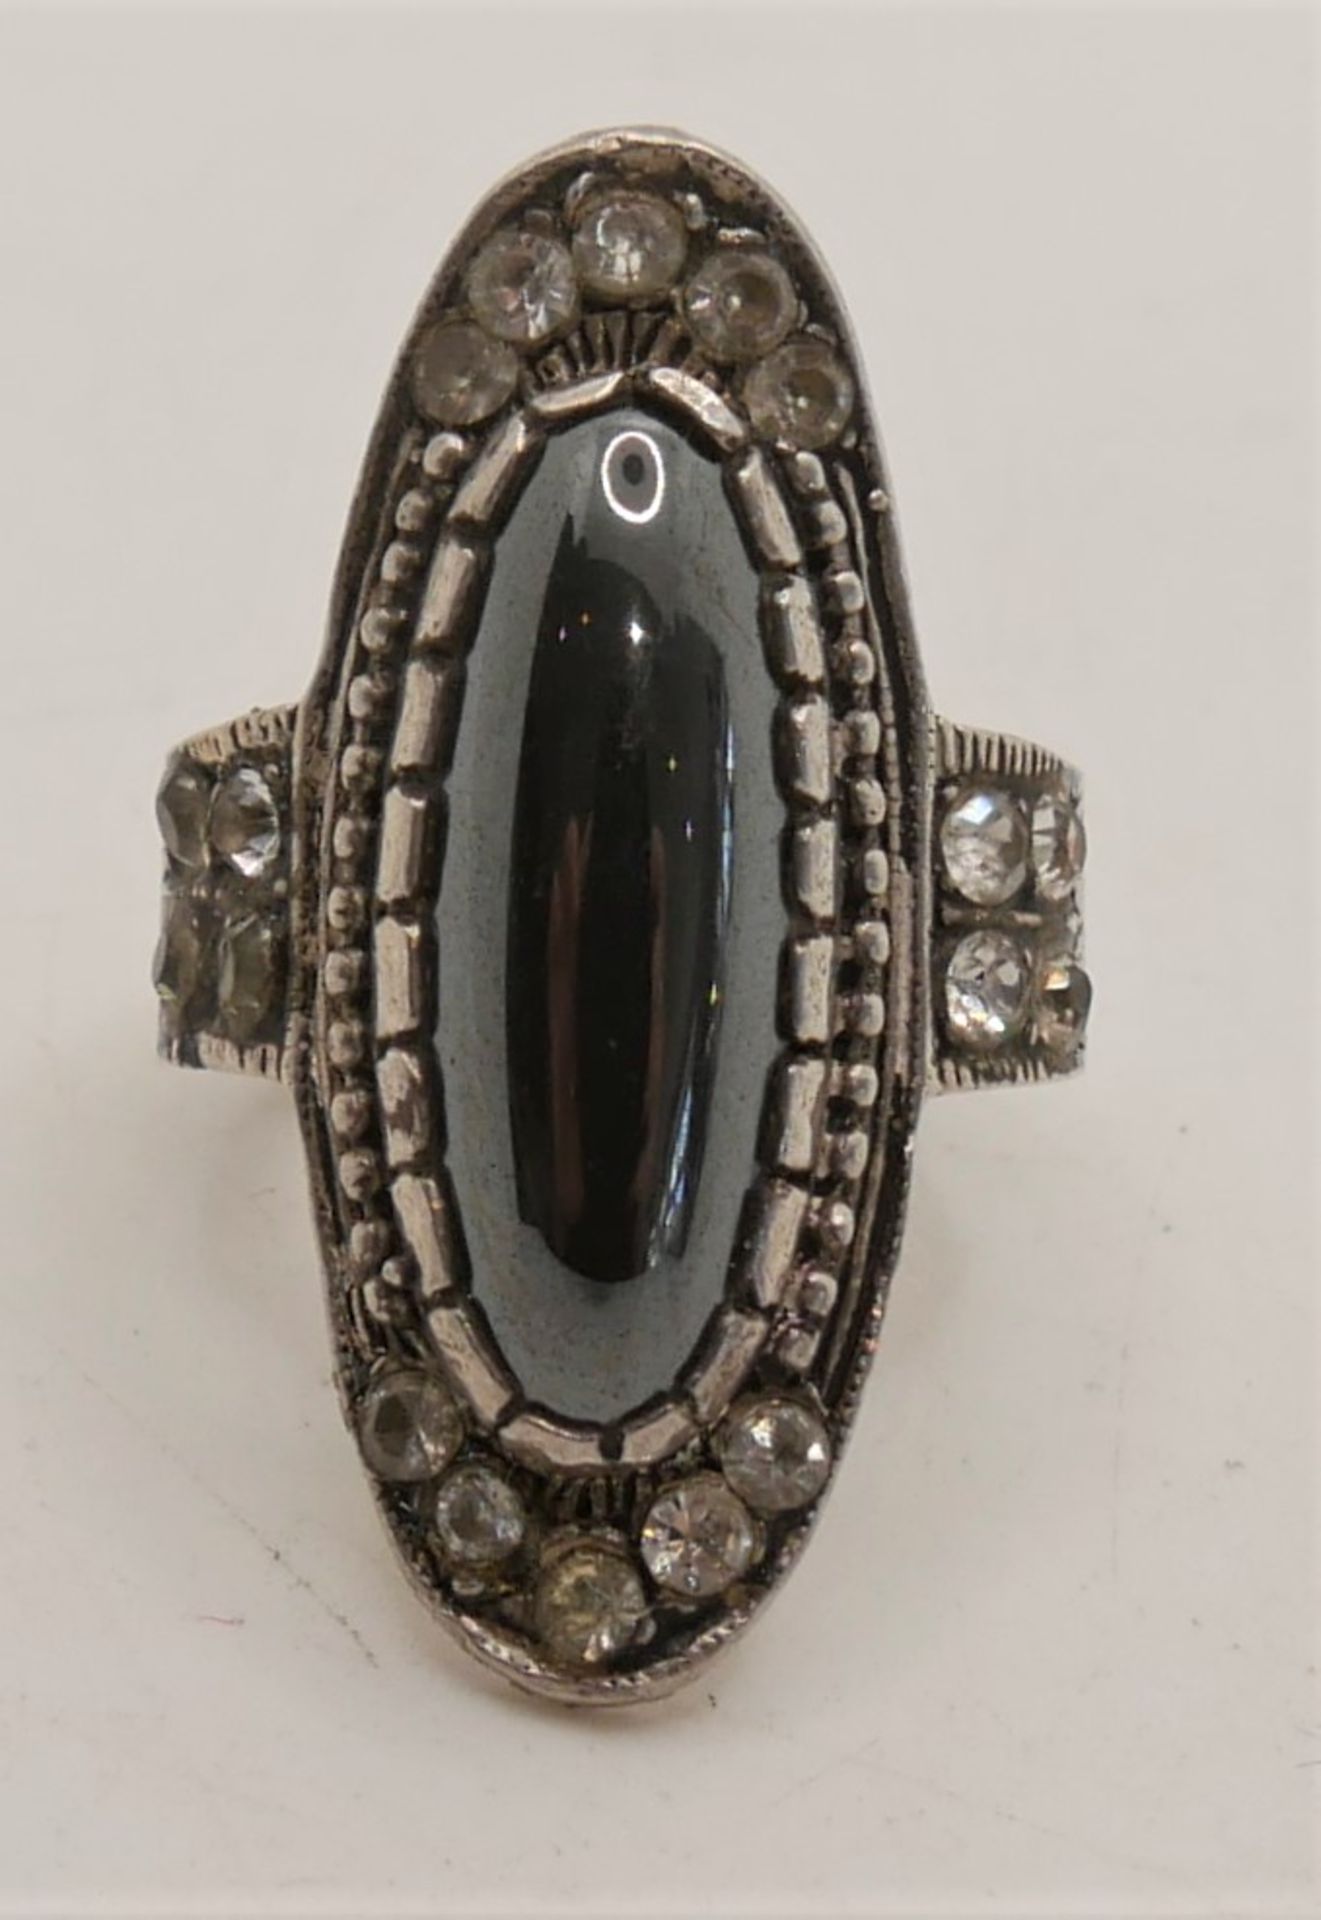 Damenring, 925er Silber, besetzt mit Hämatit. Ringgröße 55